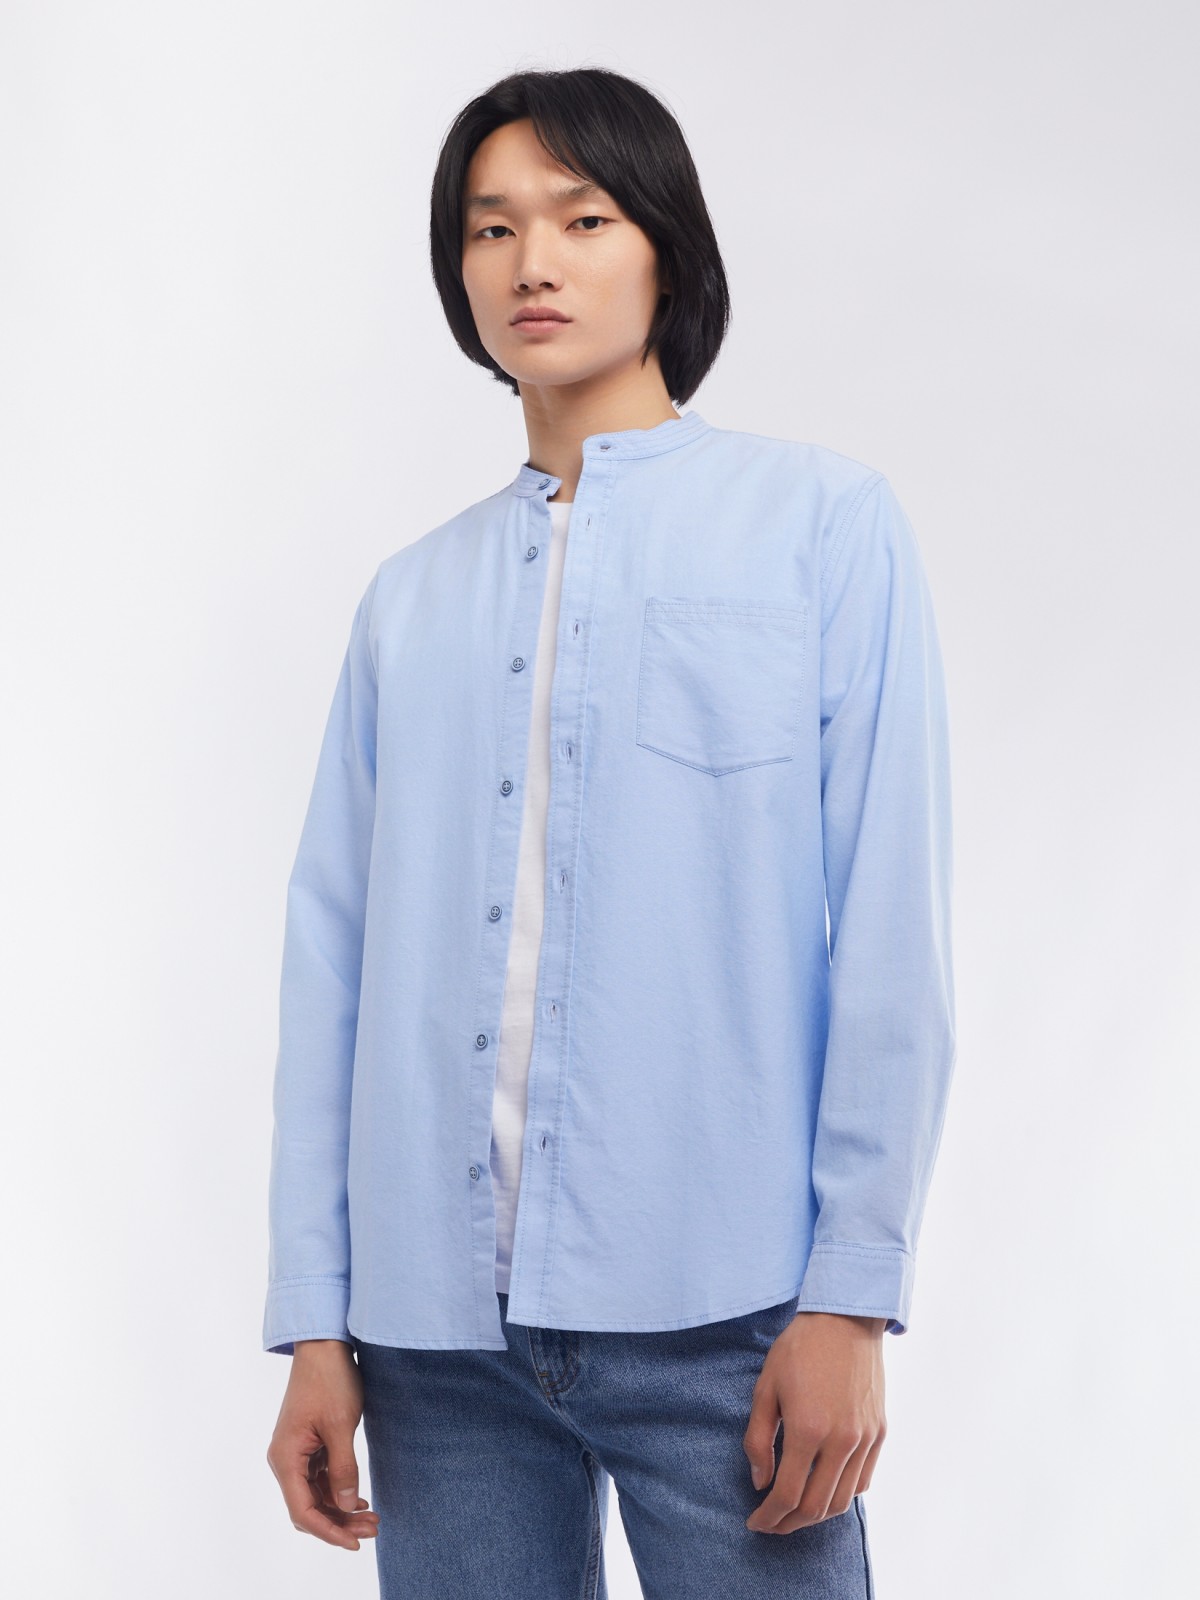 Офисная рубашка из хлопка с воротником-стойкой и длинным рукавом zolla 014122159033, цвет светло-голубой, размер S